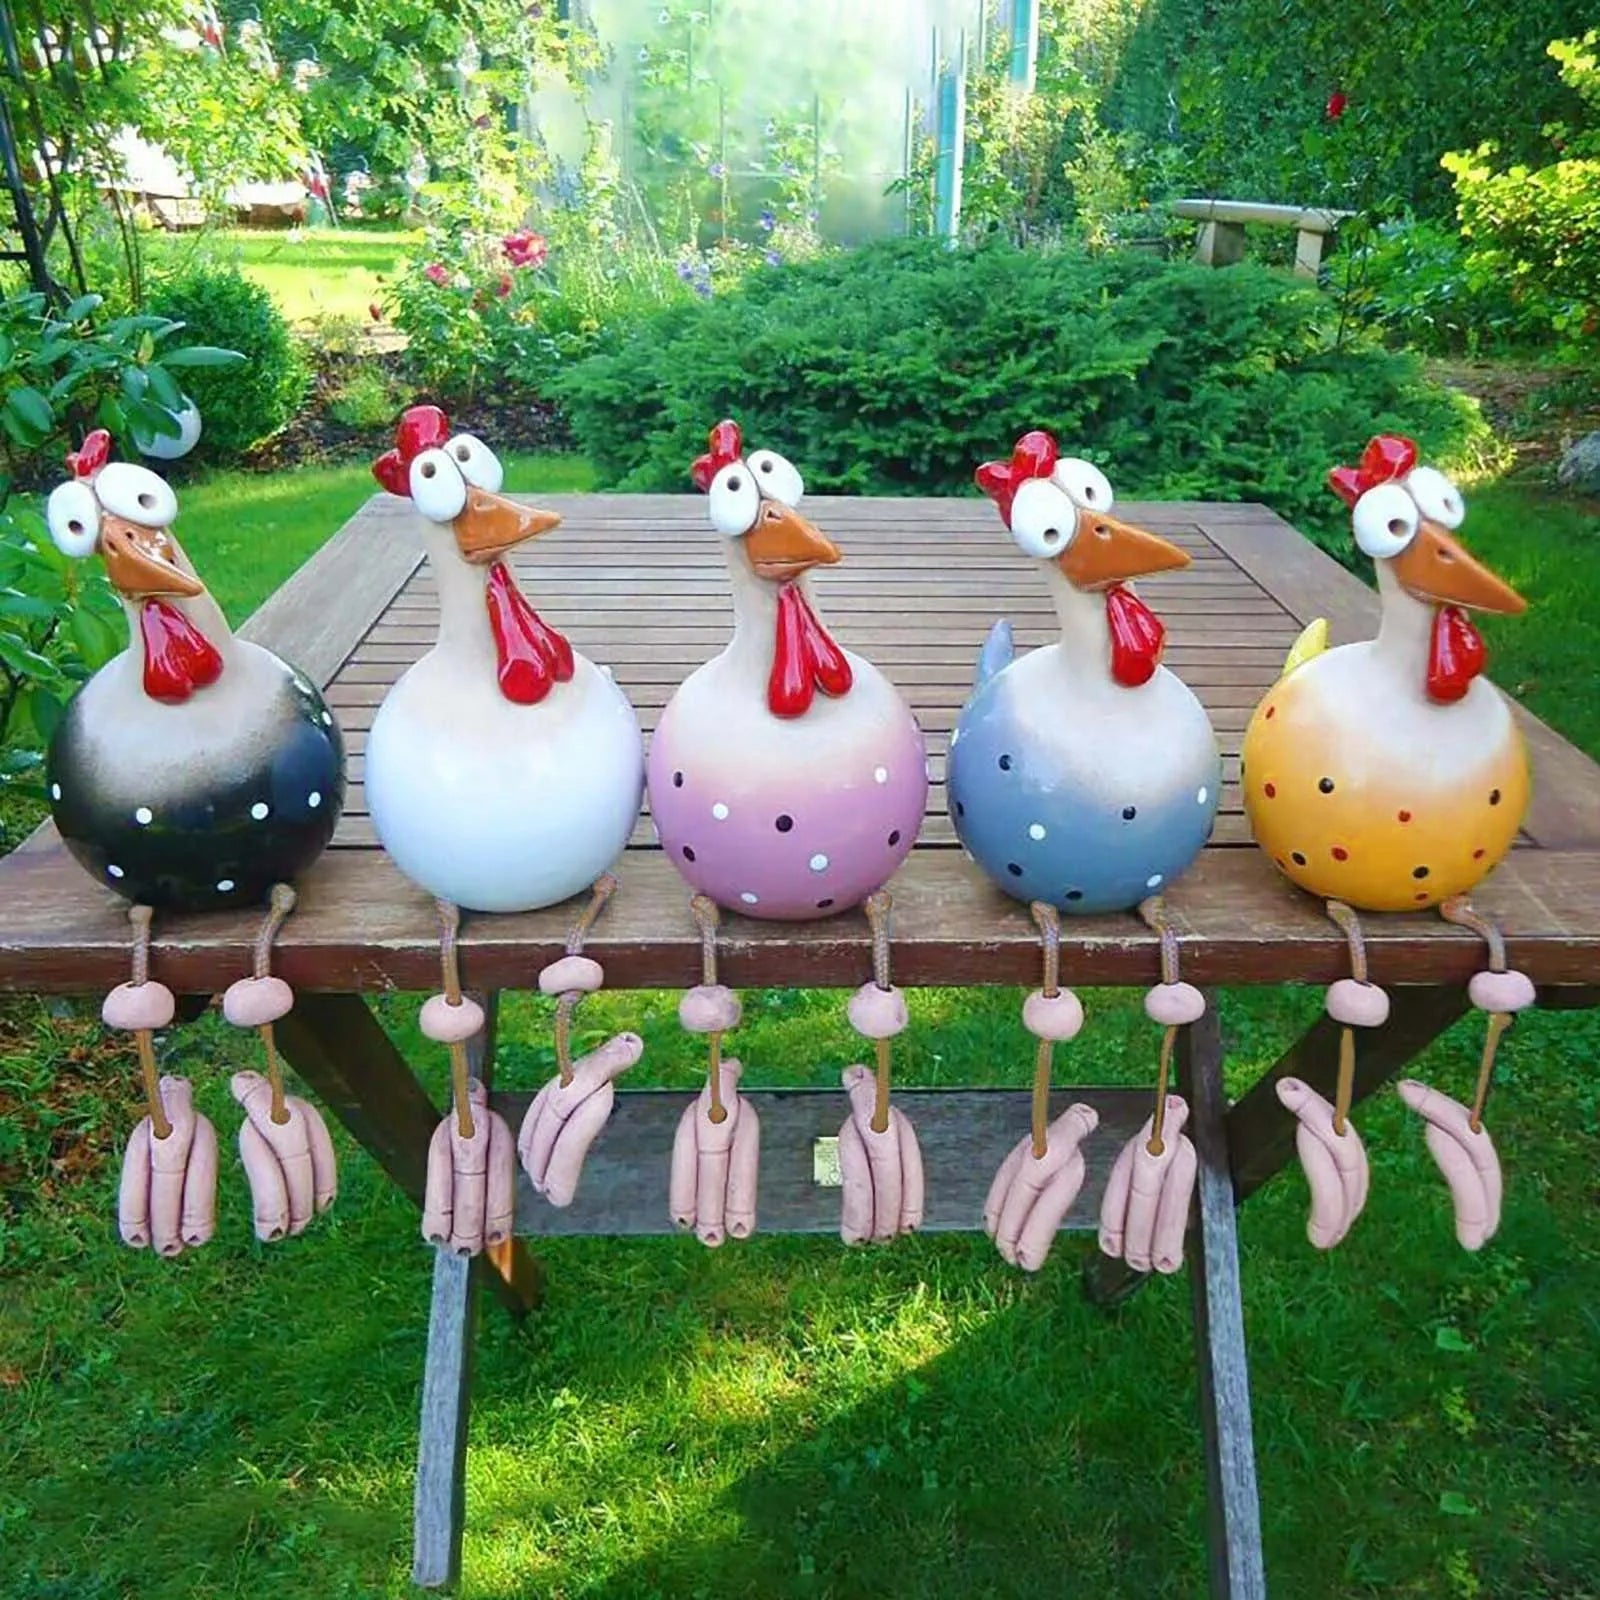 재미있는 치킨 정원 장식 수지 동상 홈 농장 마당 장식 치킨 암탉 조각 아트 공예 안뜰 집들이